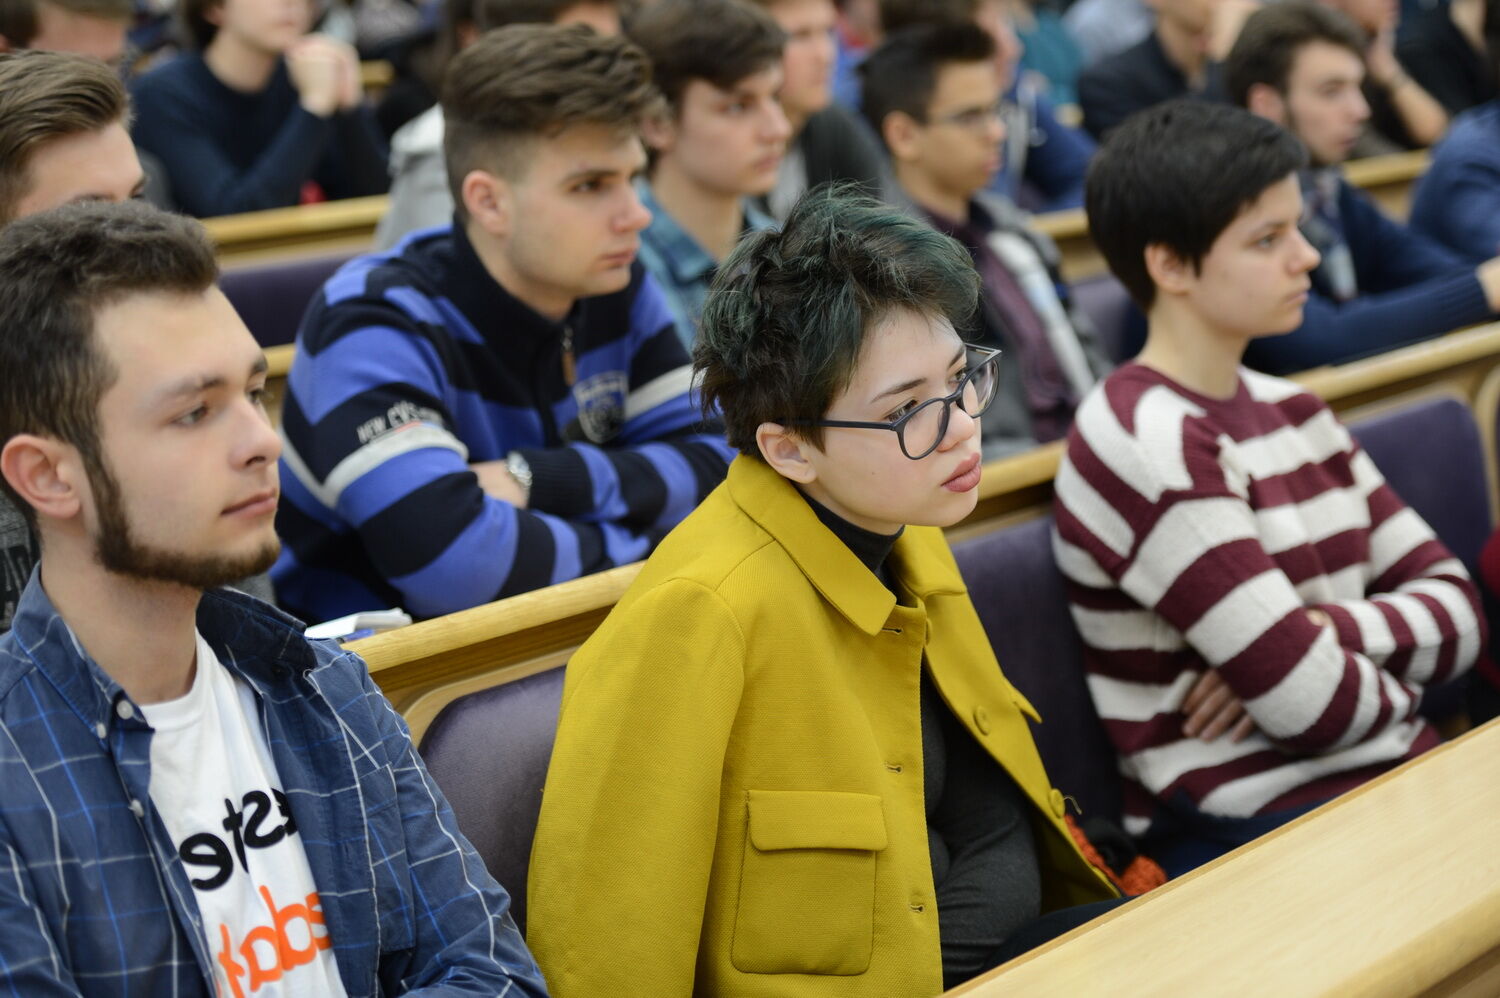 Фонд Бориса Колесникова открыл конкурс для студентов "Программист" с поездкой в Токио